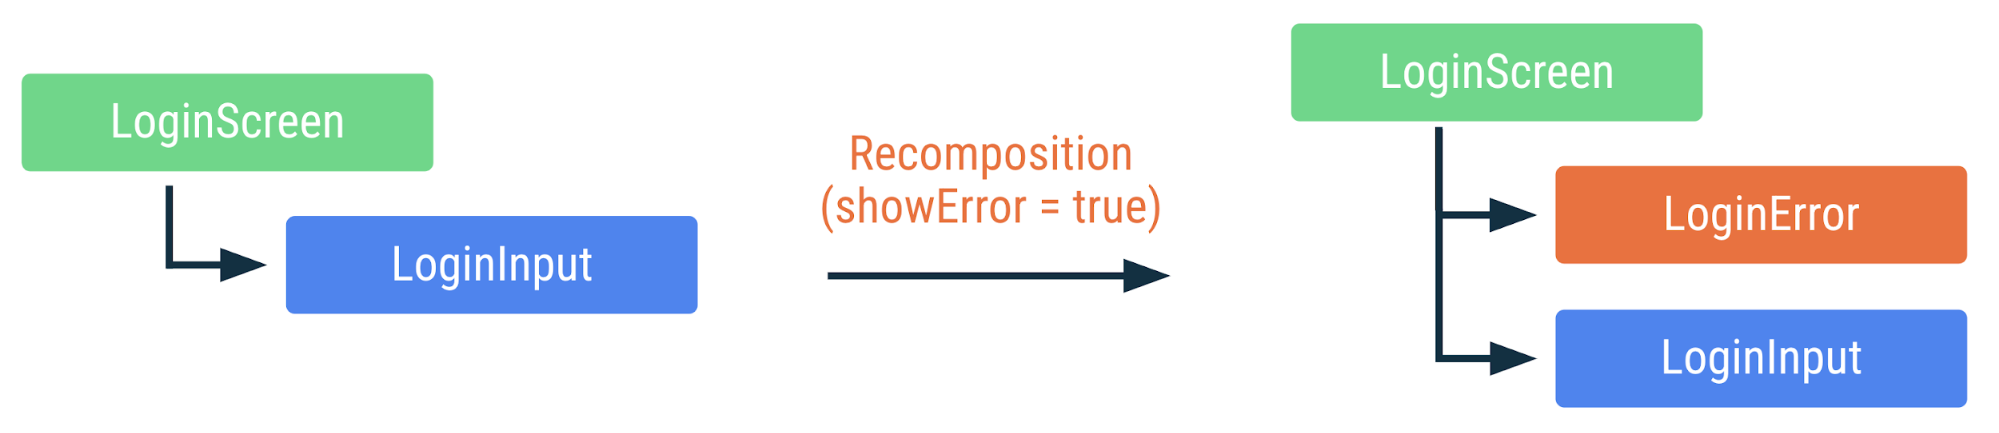 Diagrama mostrando como ocorre a recomposição do código anterior se a sinalização showError mudar para &quot;true&quot;. O LoginError que pode ser composto é adicionado, mas não ocorre a recomposição das outras funções.